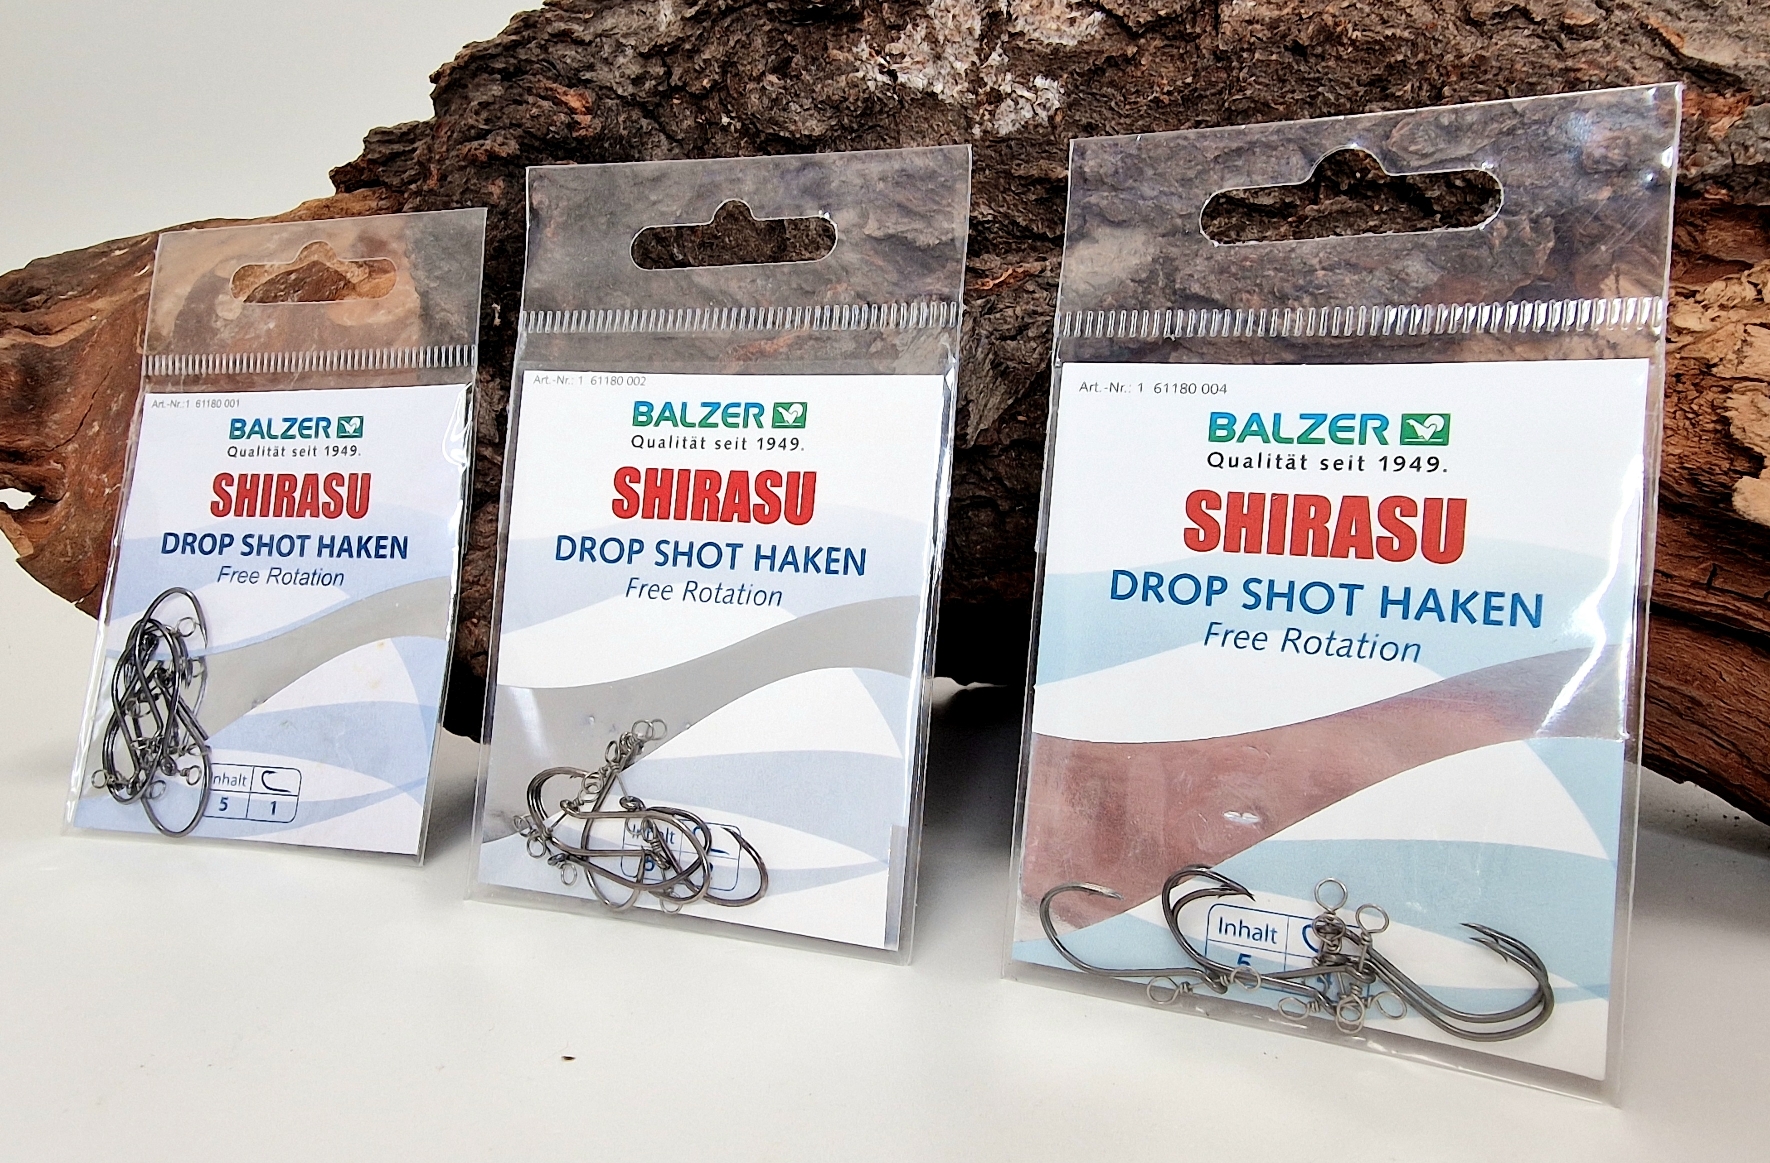 Balzer Shirasu DropShot Haken Free Rotation